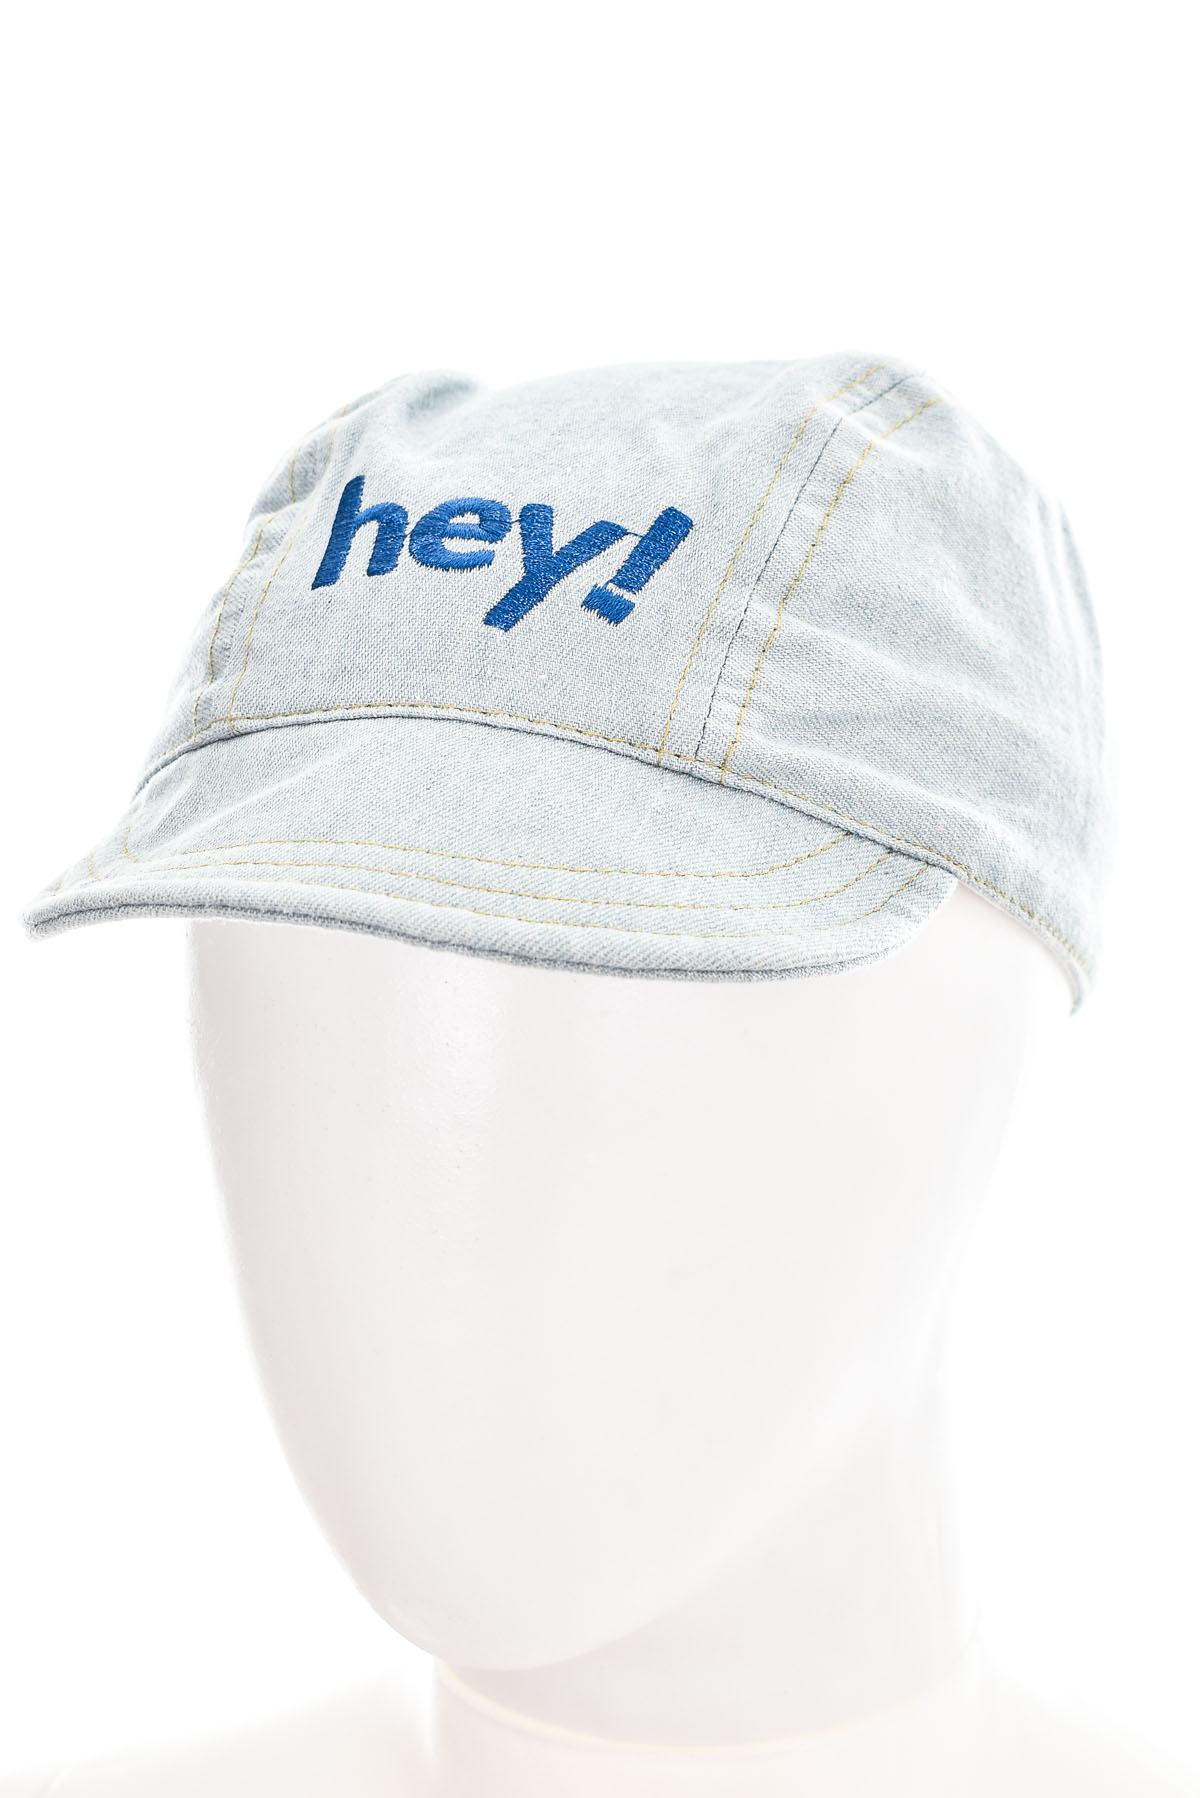 Παιδικό καπέλο - YO! club - 0